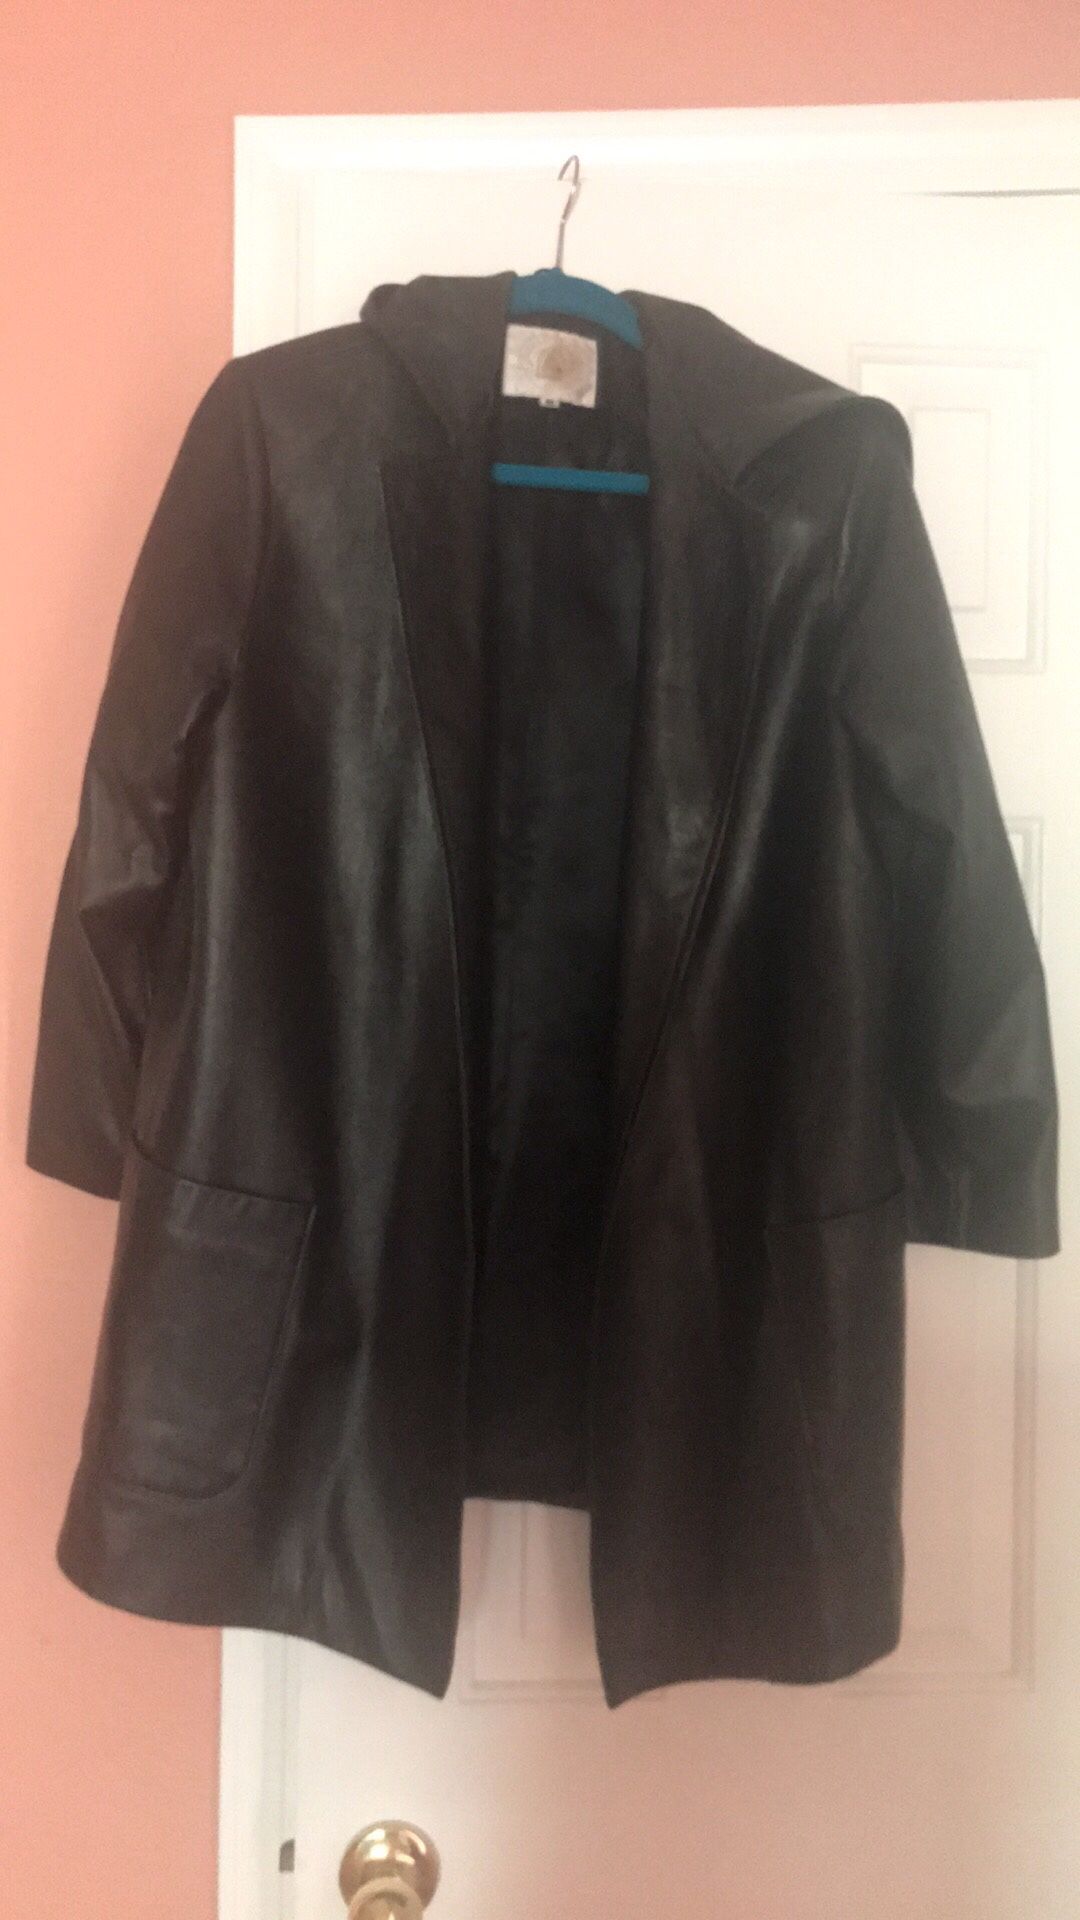 Leather coat jacket